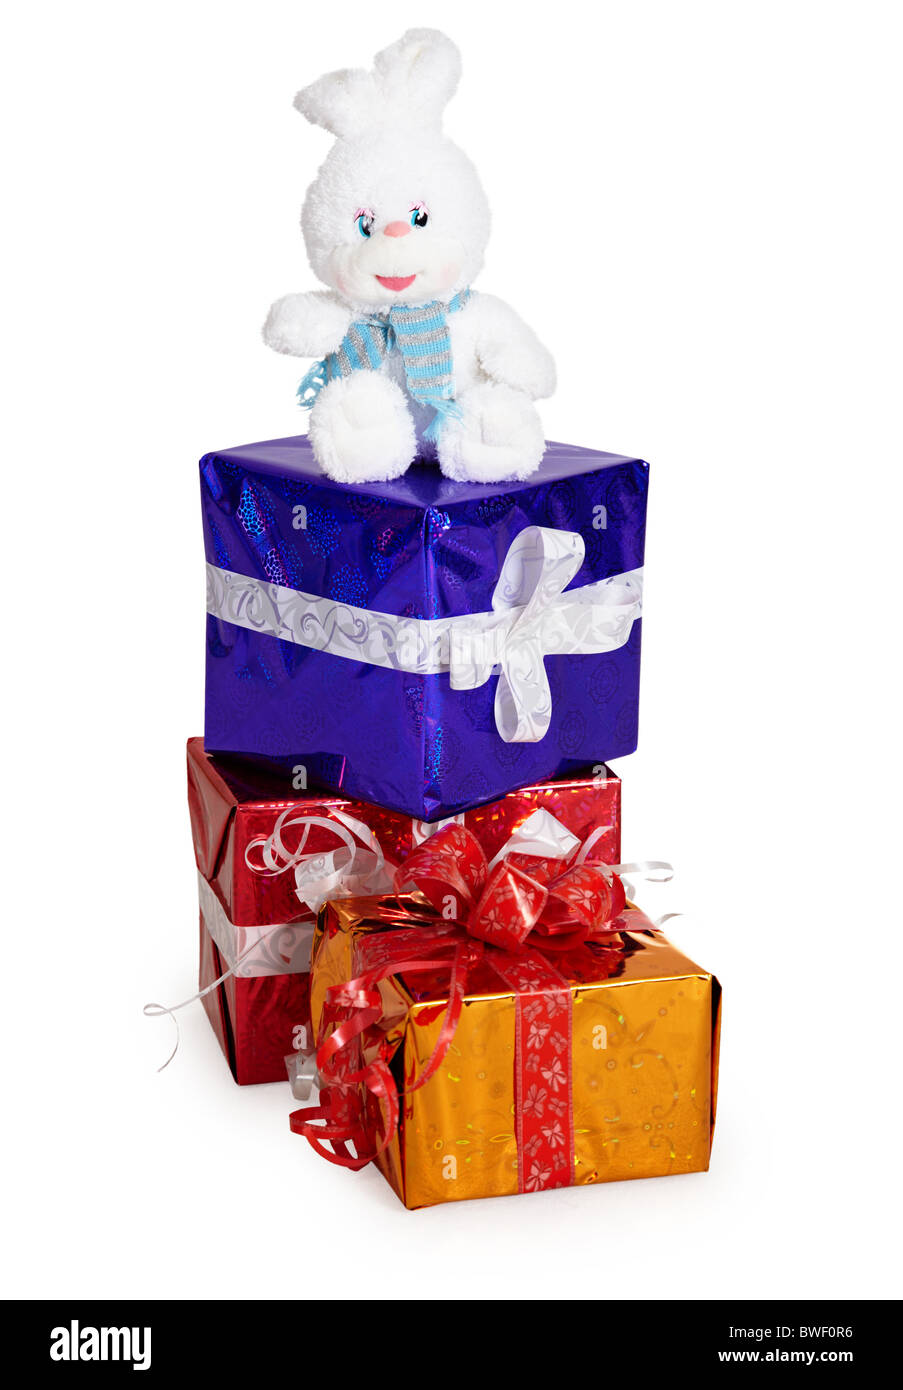 Un jouet lapin, et d'autres cadeaux de Noël sur fond blanc Banque D'Images